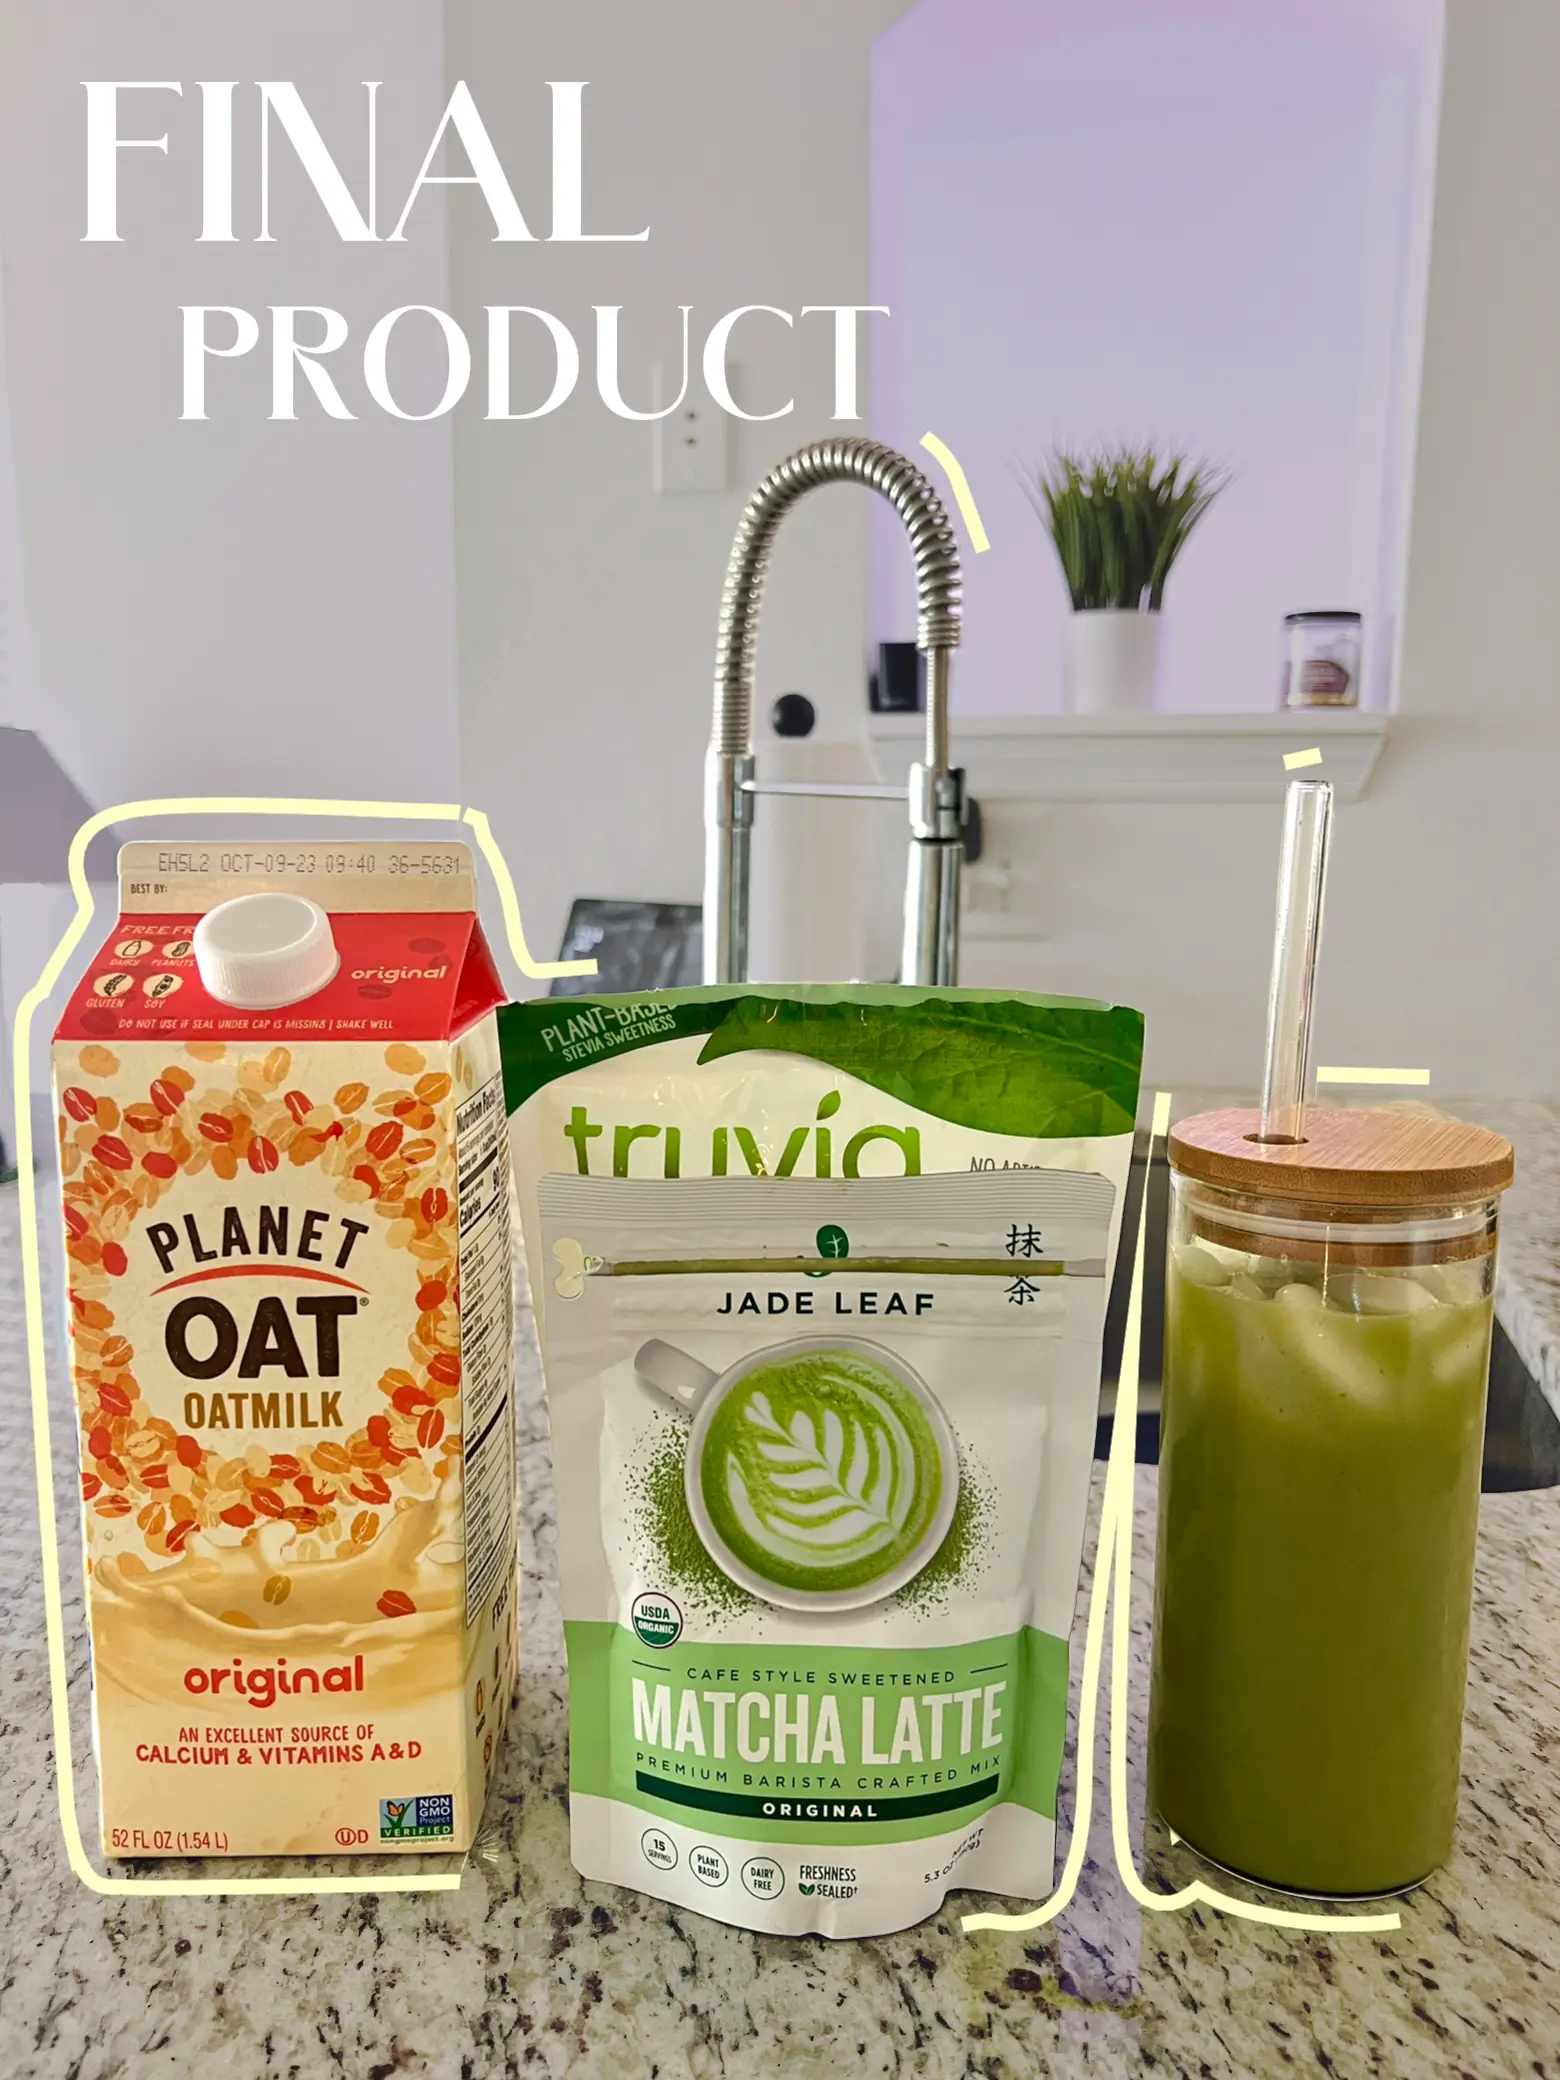 Matcha Collagen Charcoal Latte – Jade Leaf Matcha